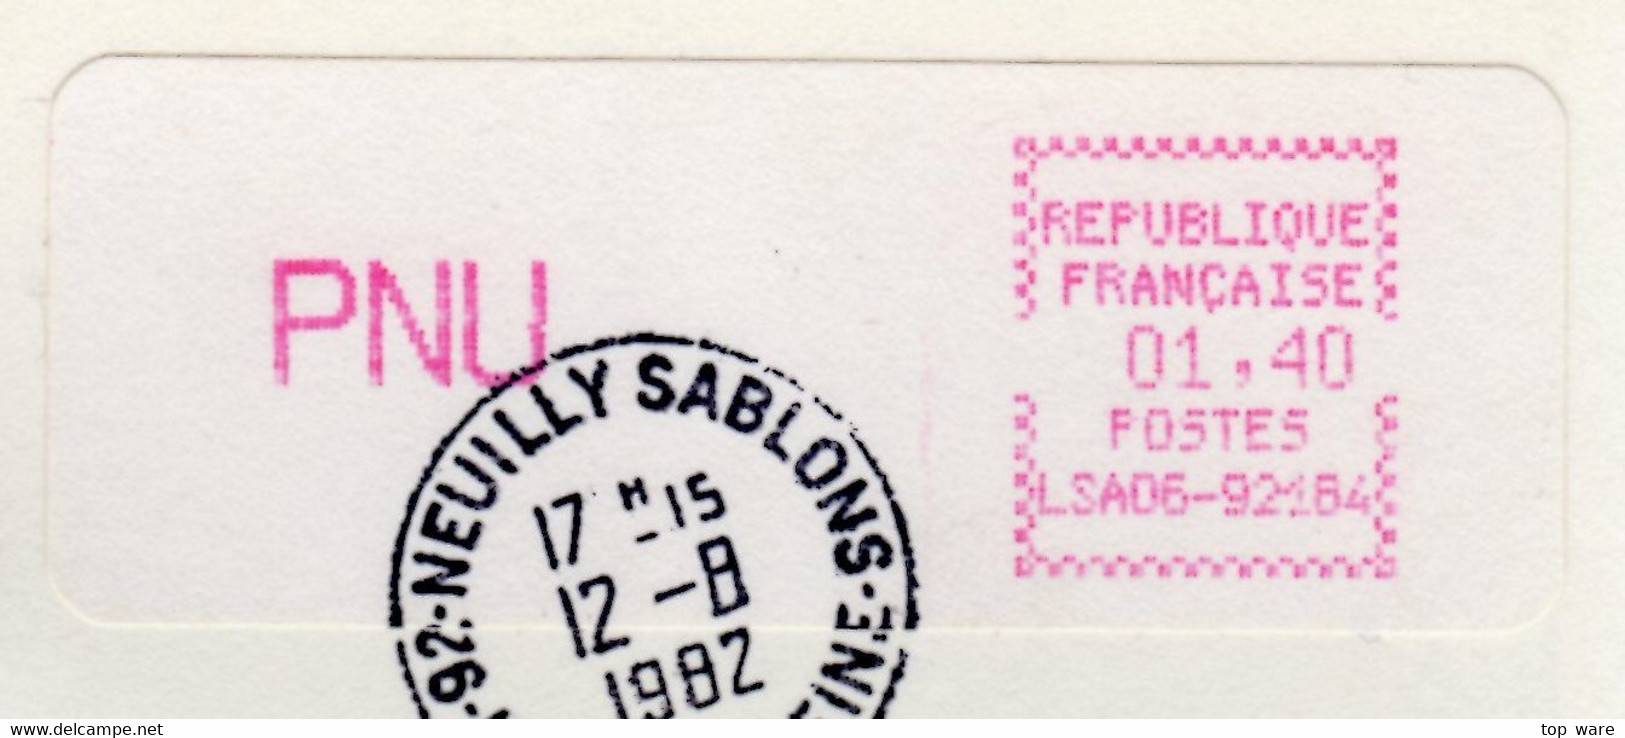 France ATM Vignette LSA06-92184 / Michel 3.1.5 Xd / PNU 1,40 FF / Neuilly Sablons / LSA Distributeurs Automatenmarken - 1981-84 LS & LSA Prototipos